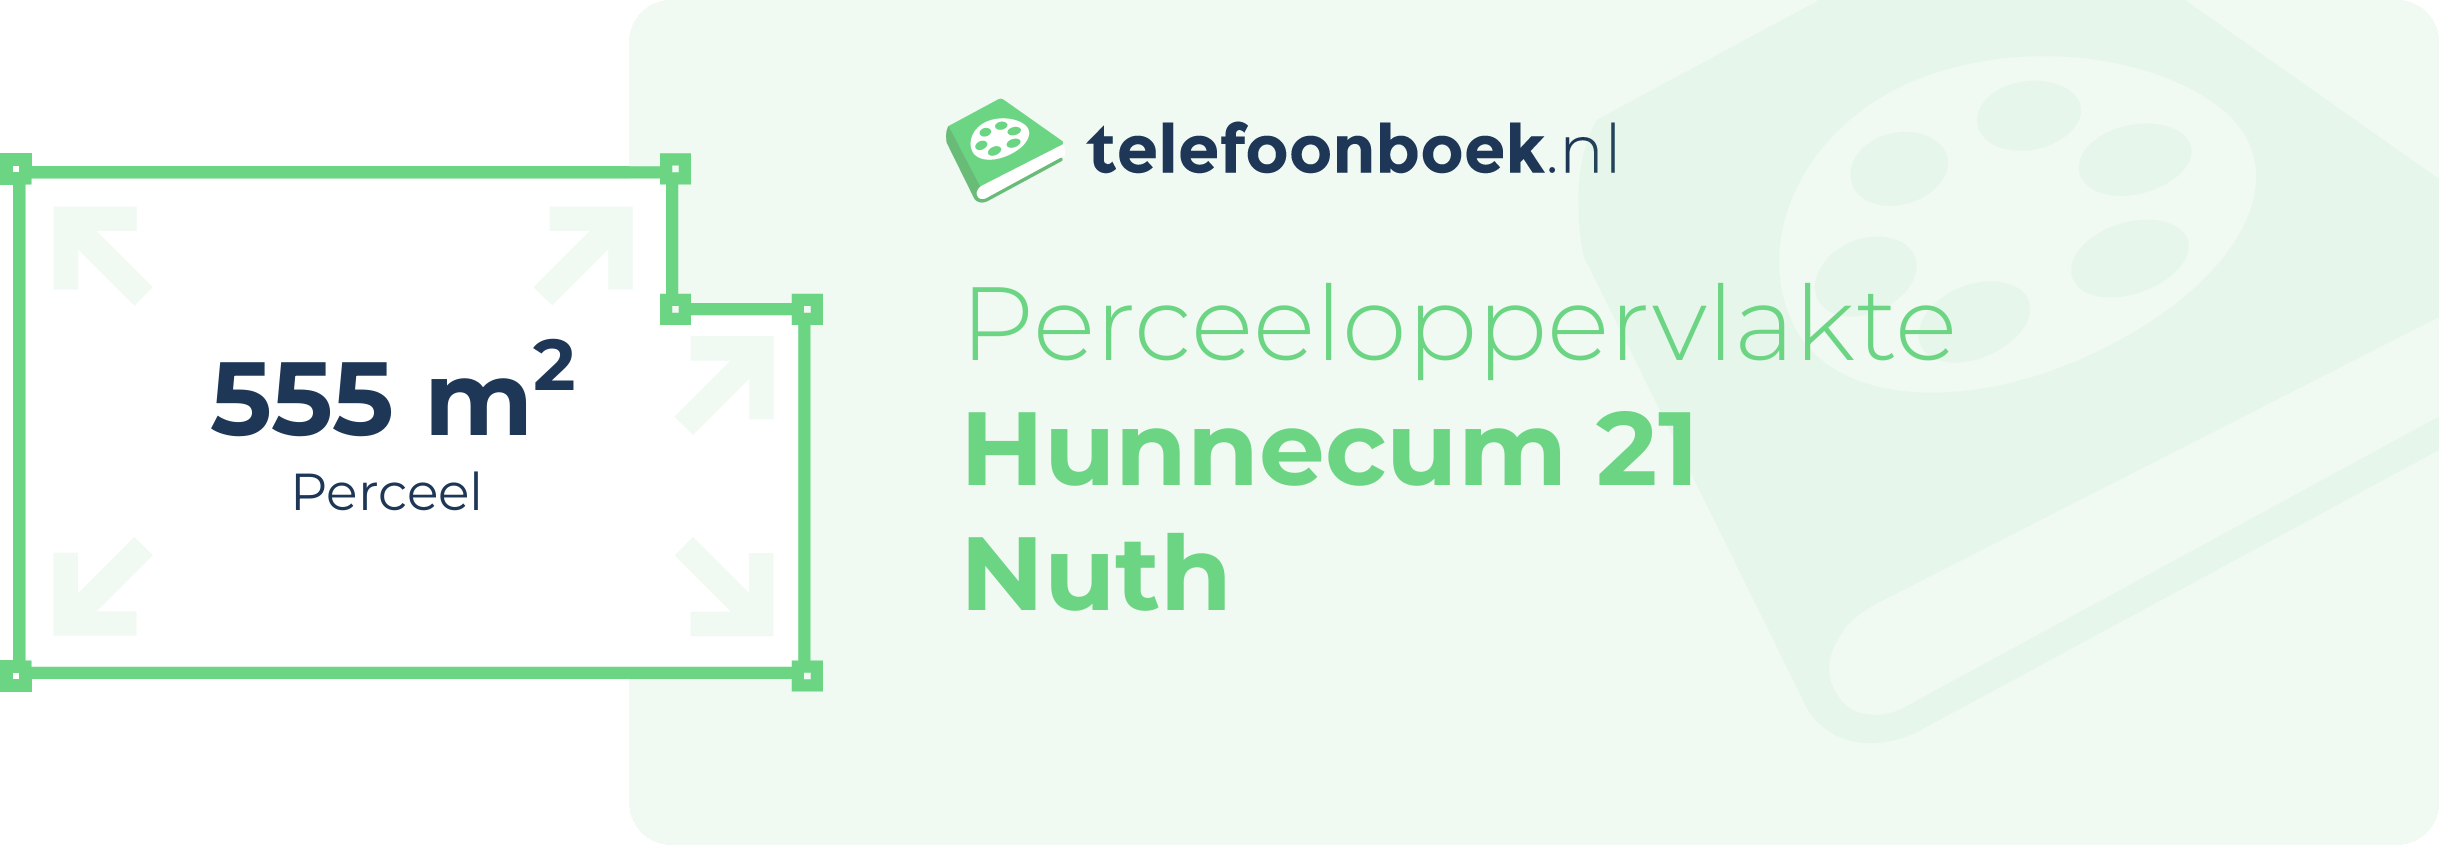 Perceeloppervlakte Hunnecum 21 Nuth